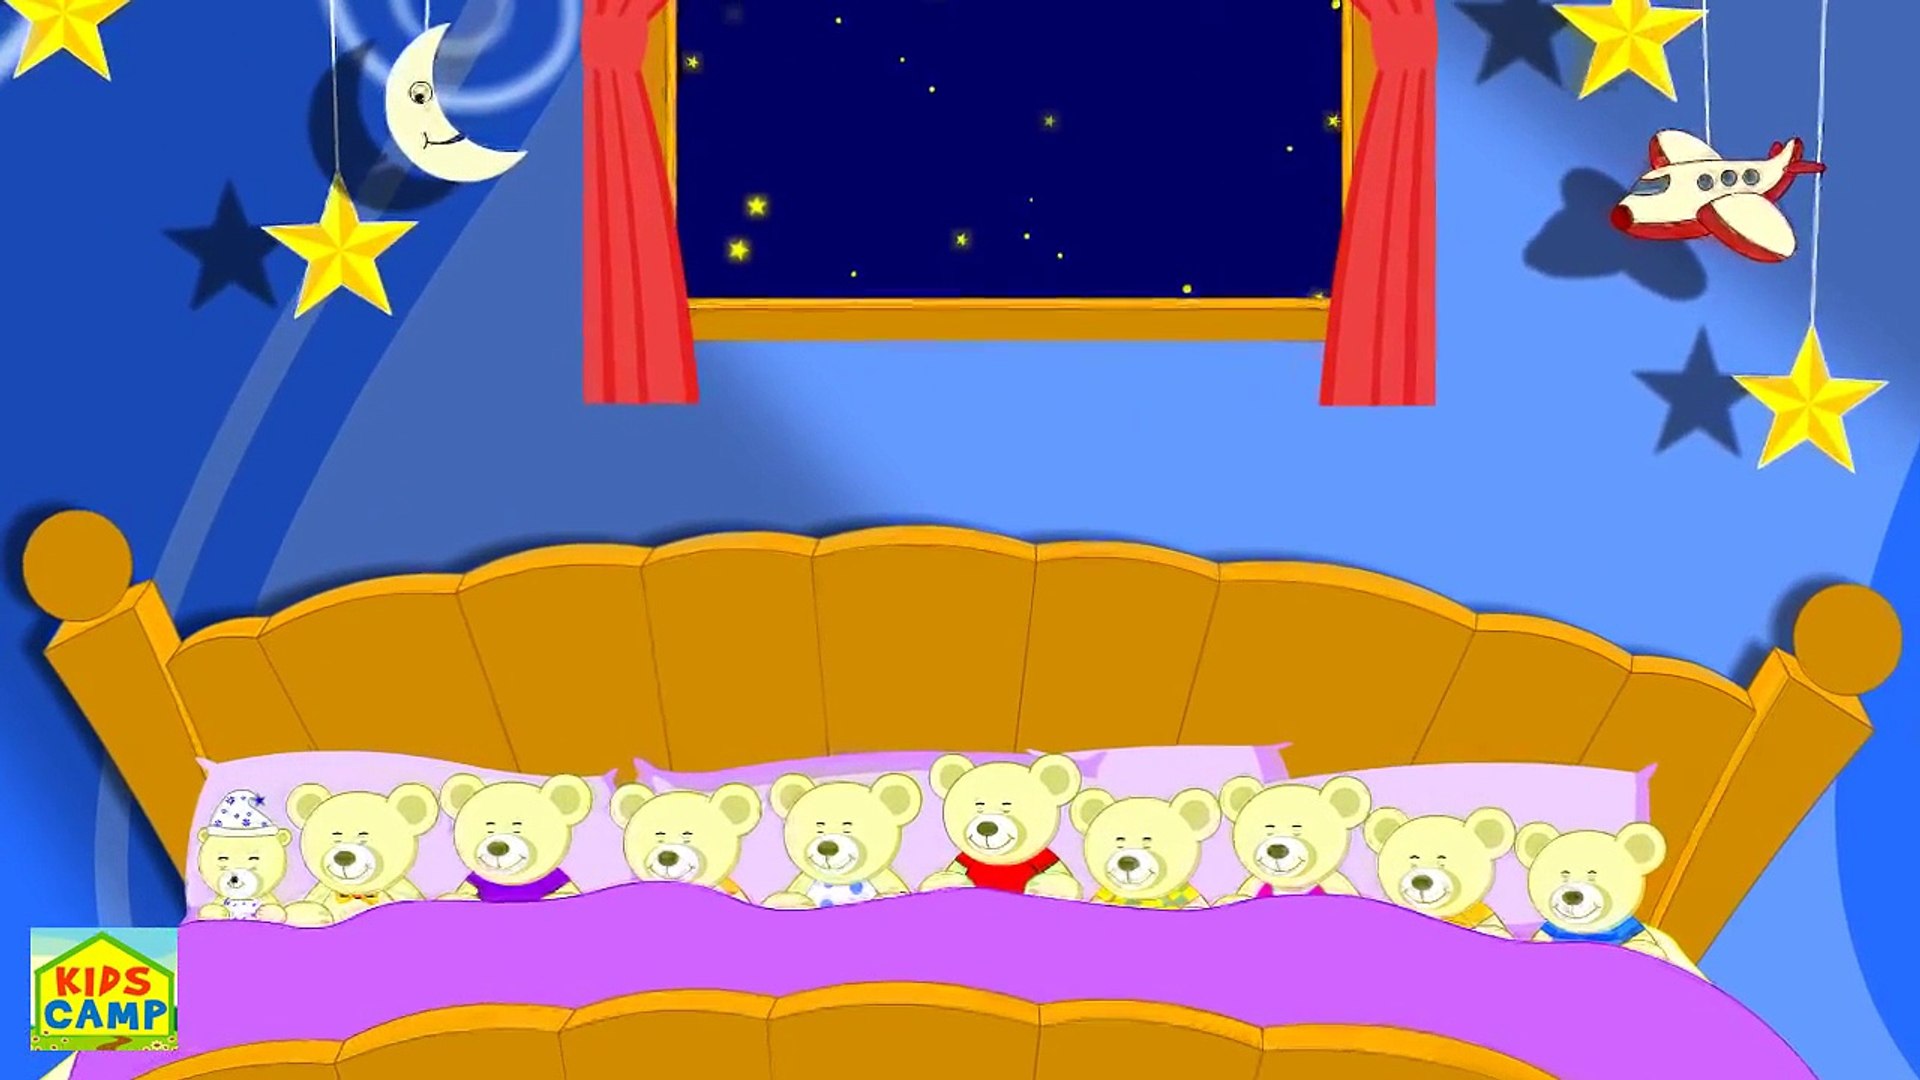 Ten in the Bed | Nursery Rhyme | Popular Nursery Rhyme by KidsCamp -  Dailymotion Video